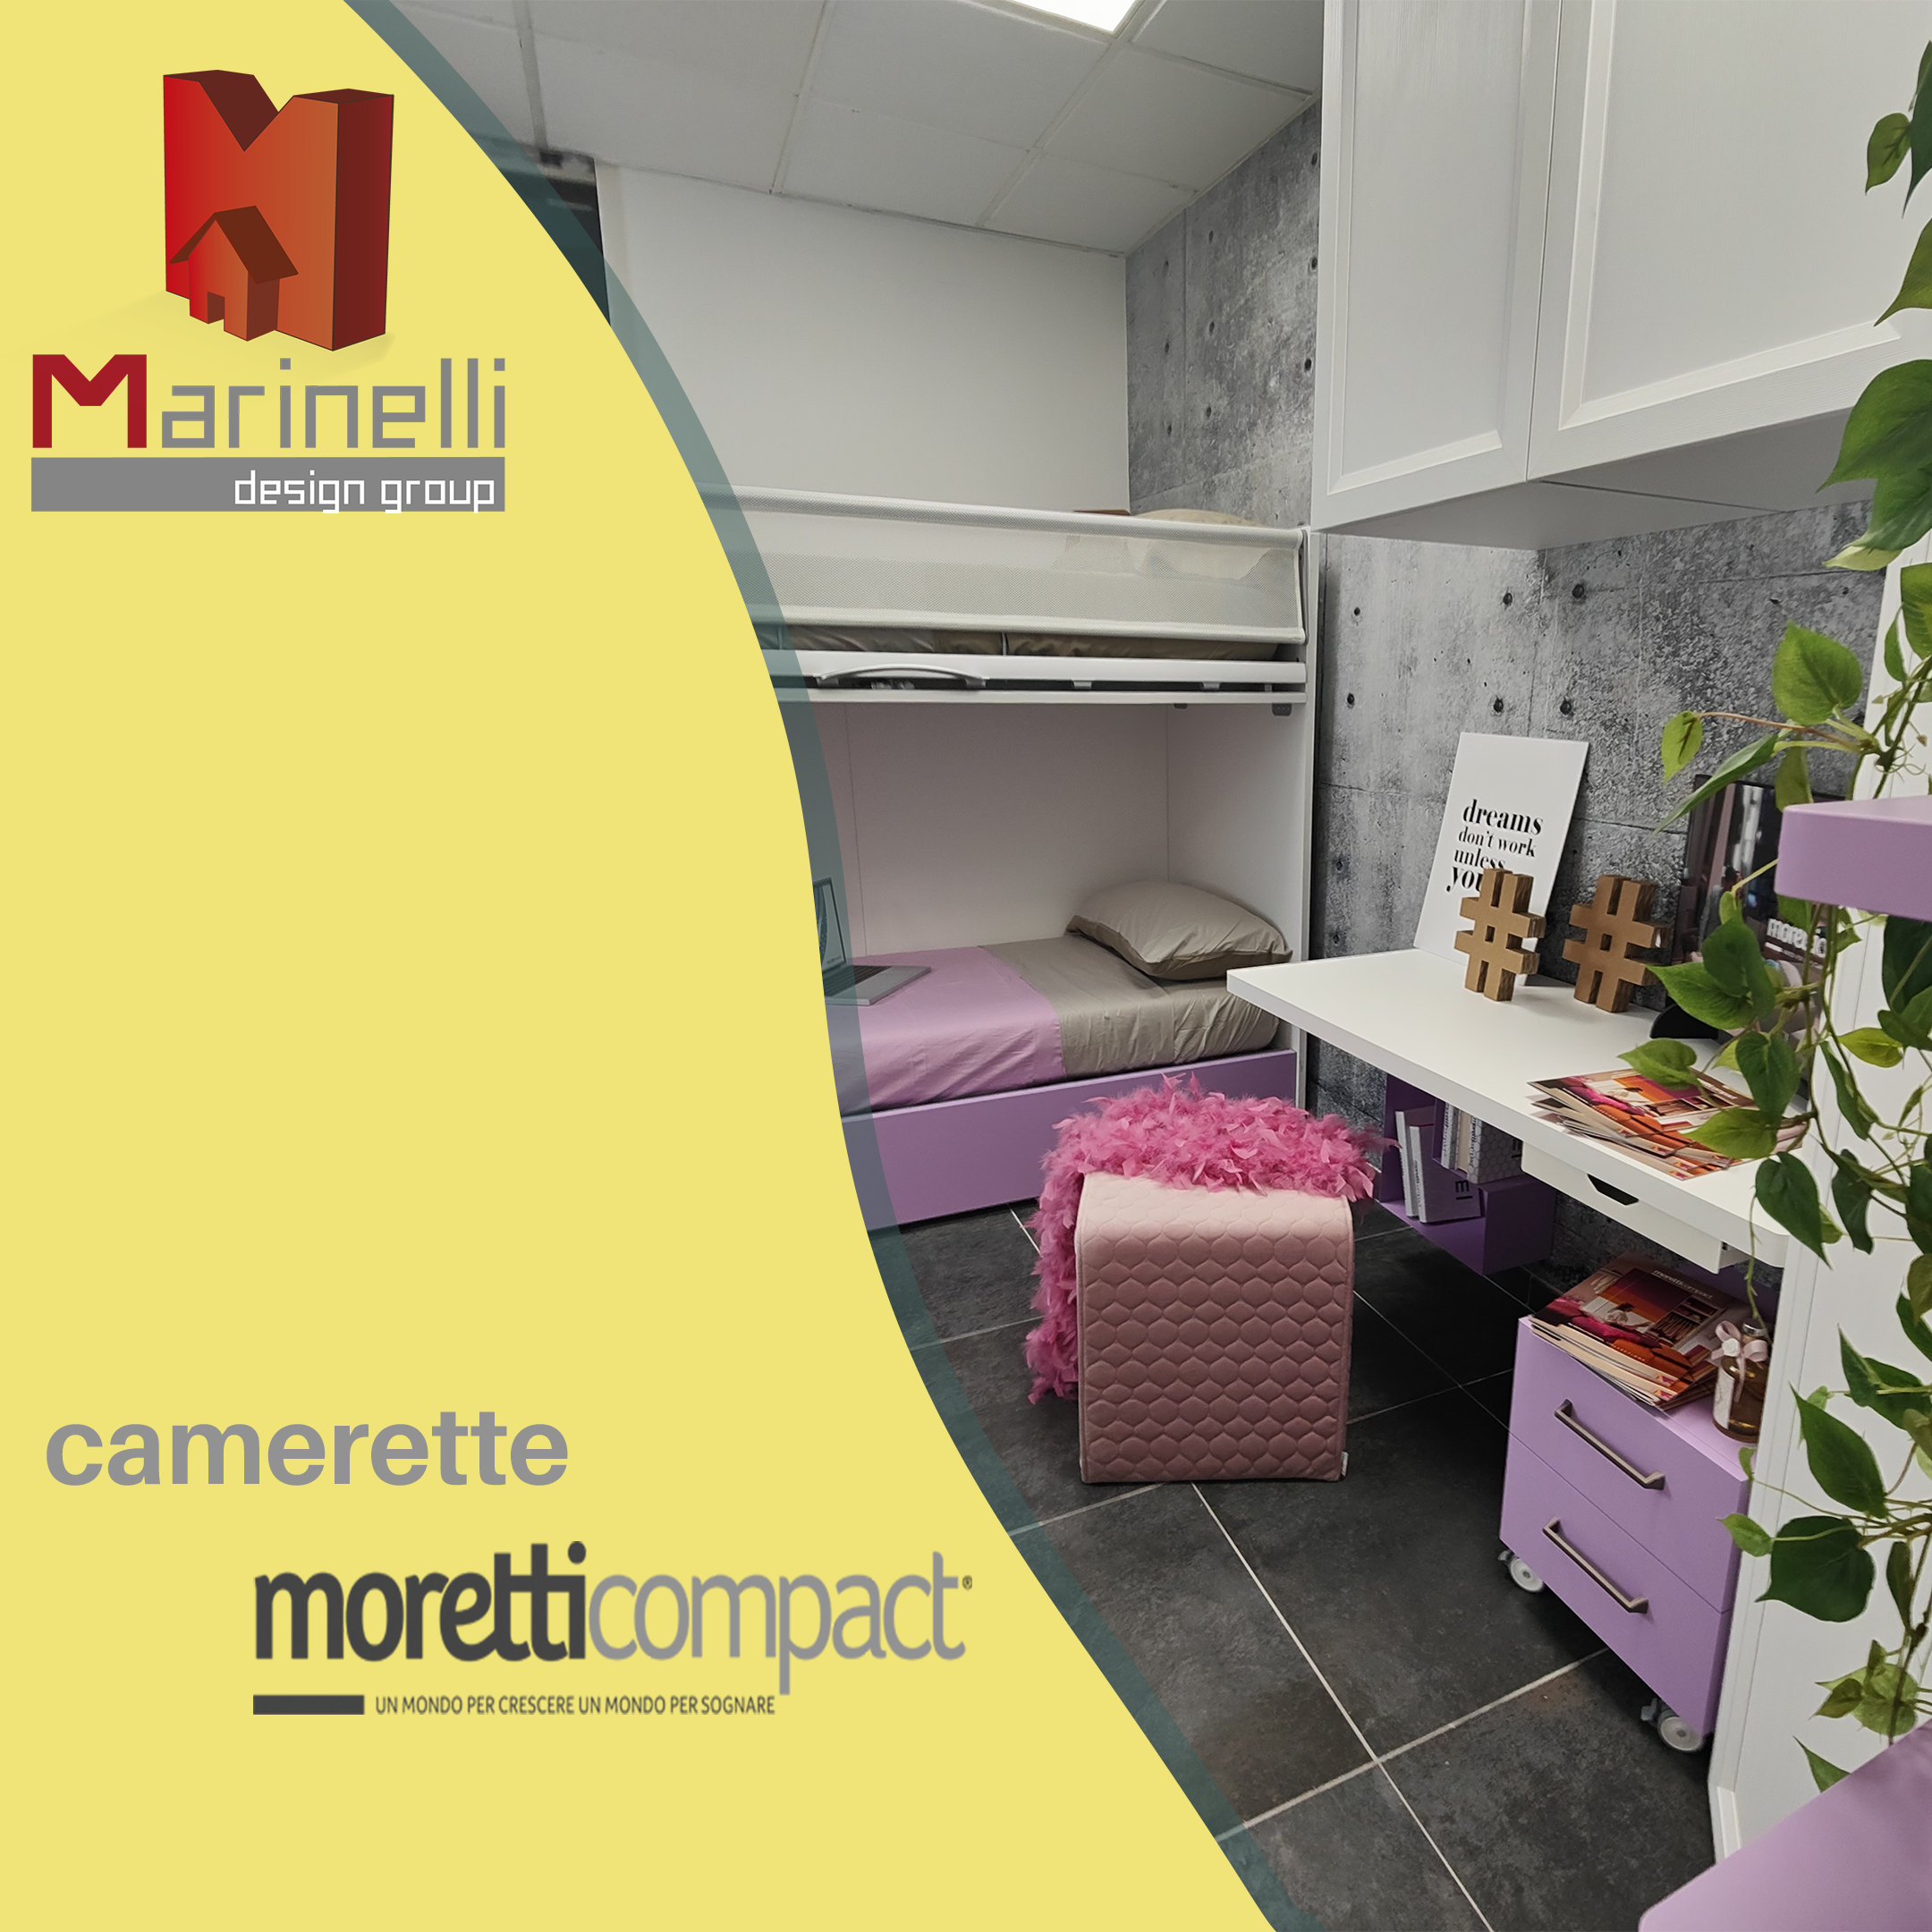 Moretti Compact Marinelli Design Group